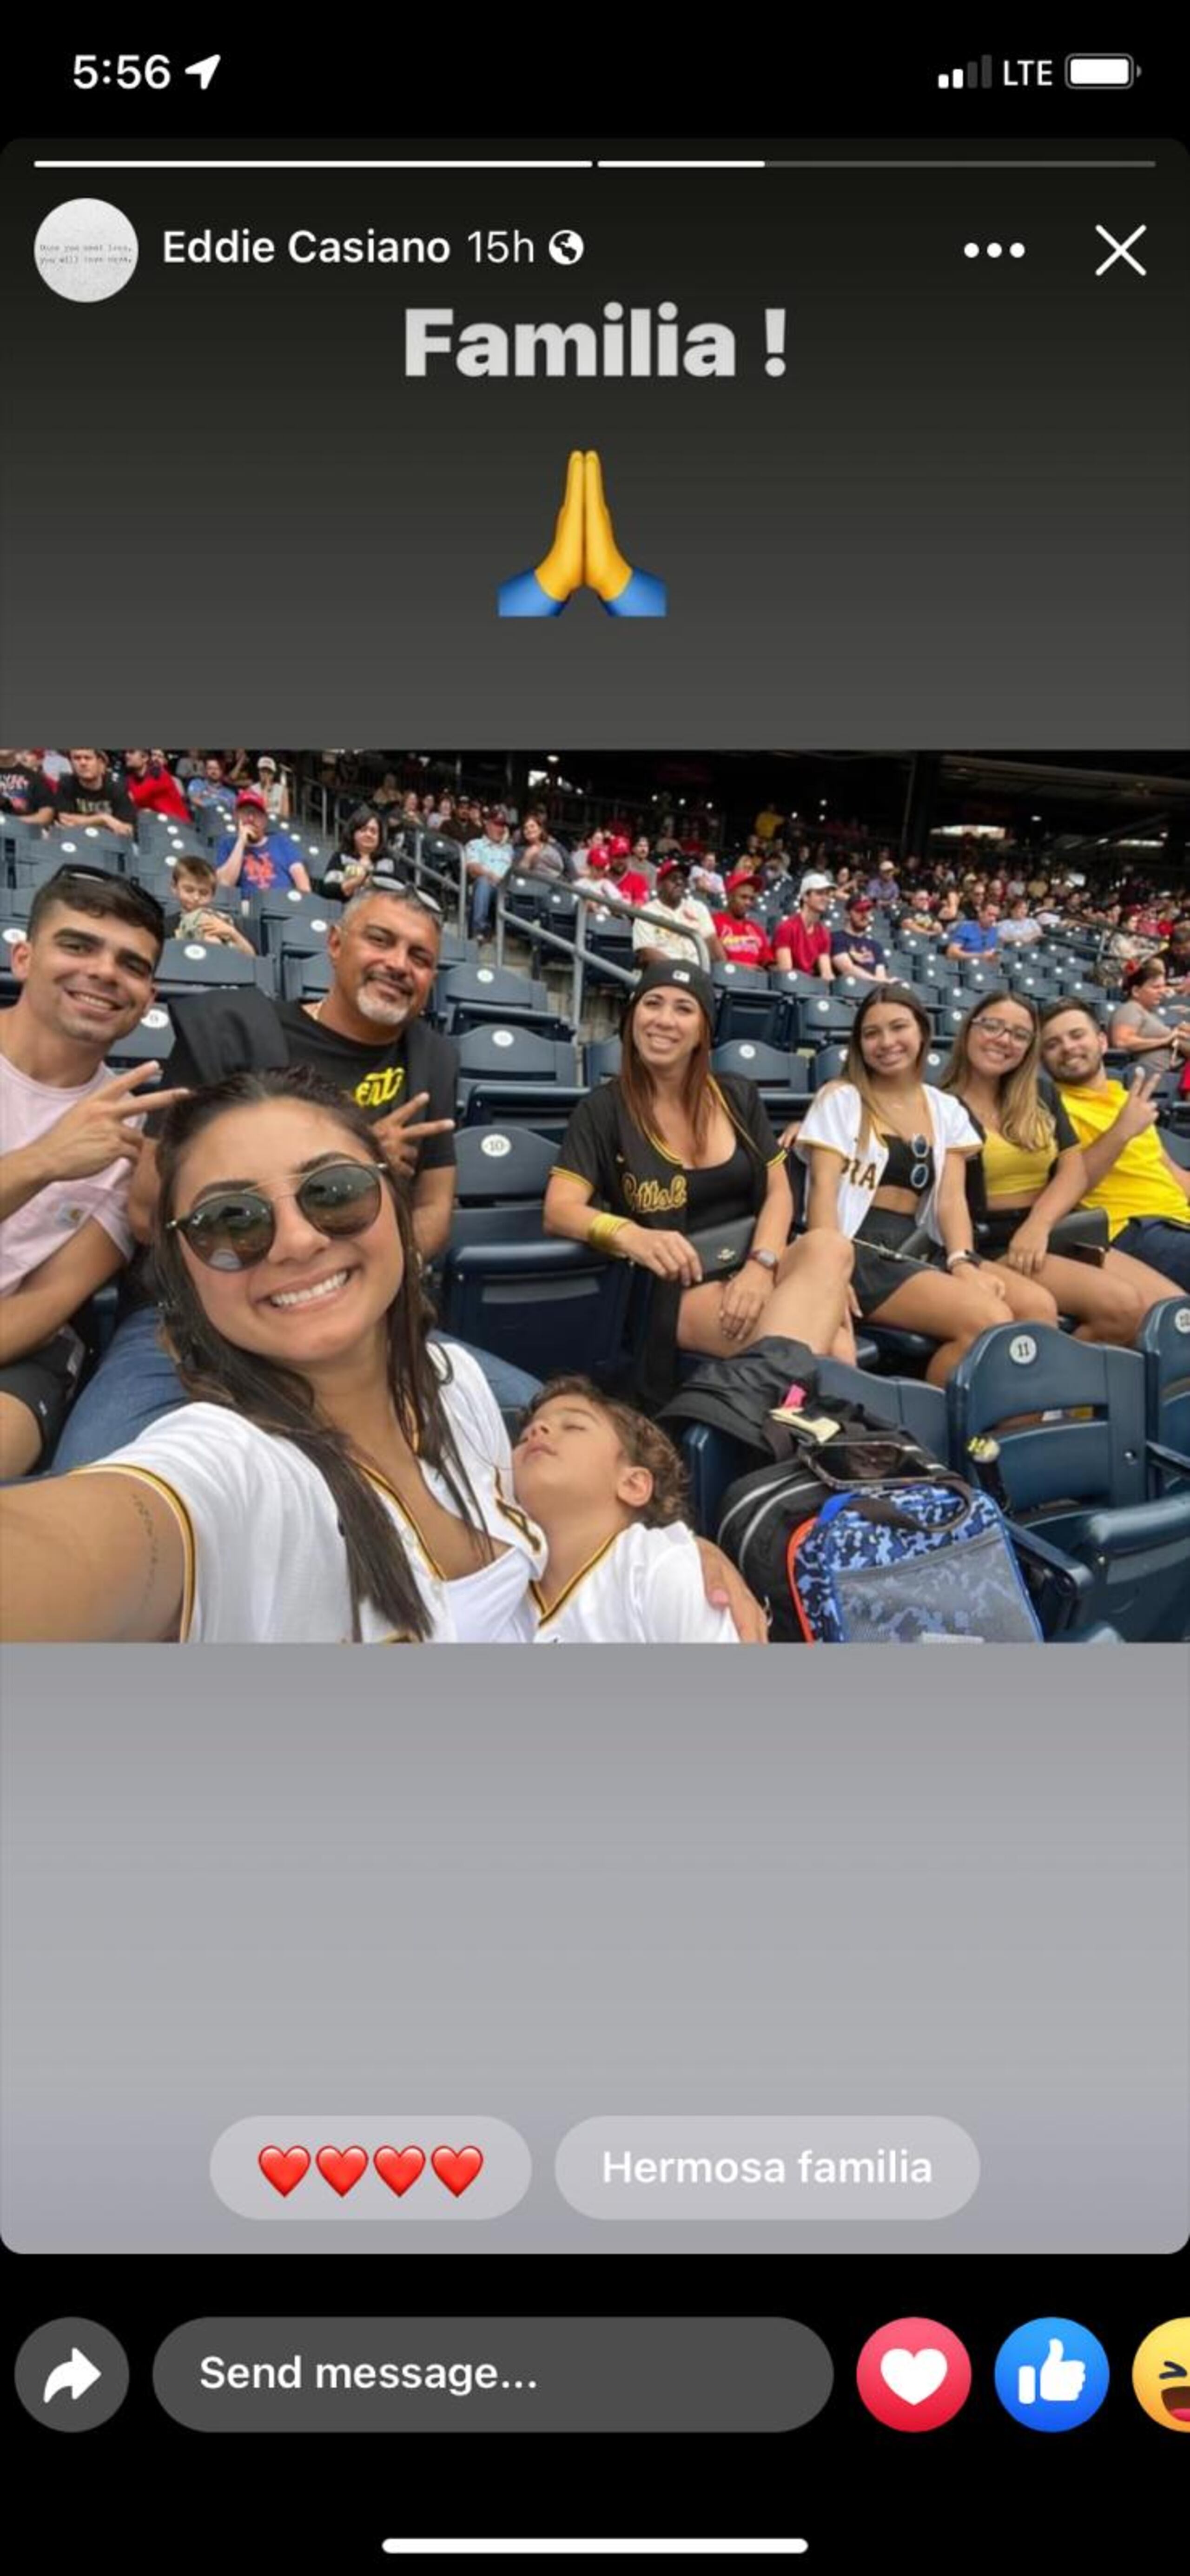 Eddie Casiano comparte en su familia en Pittsburgh.